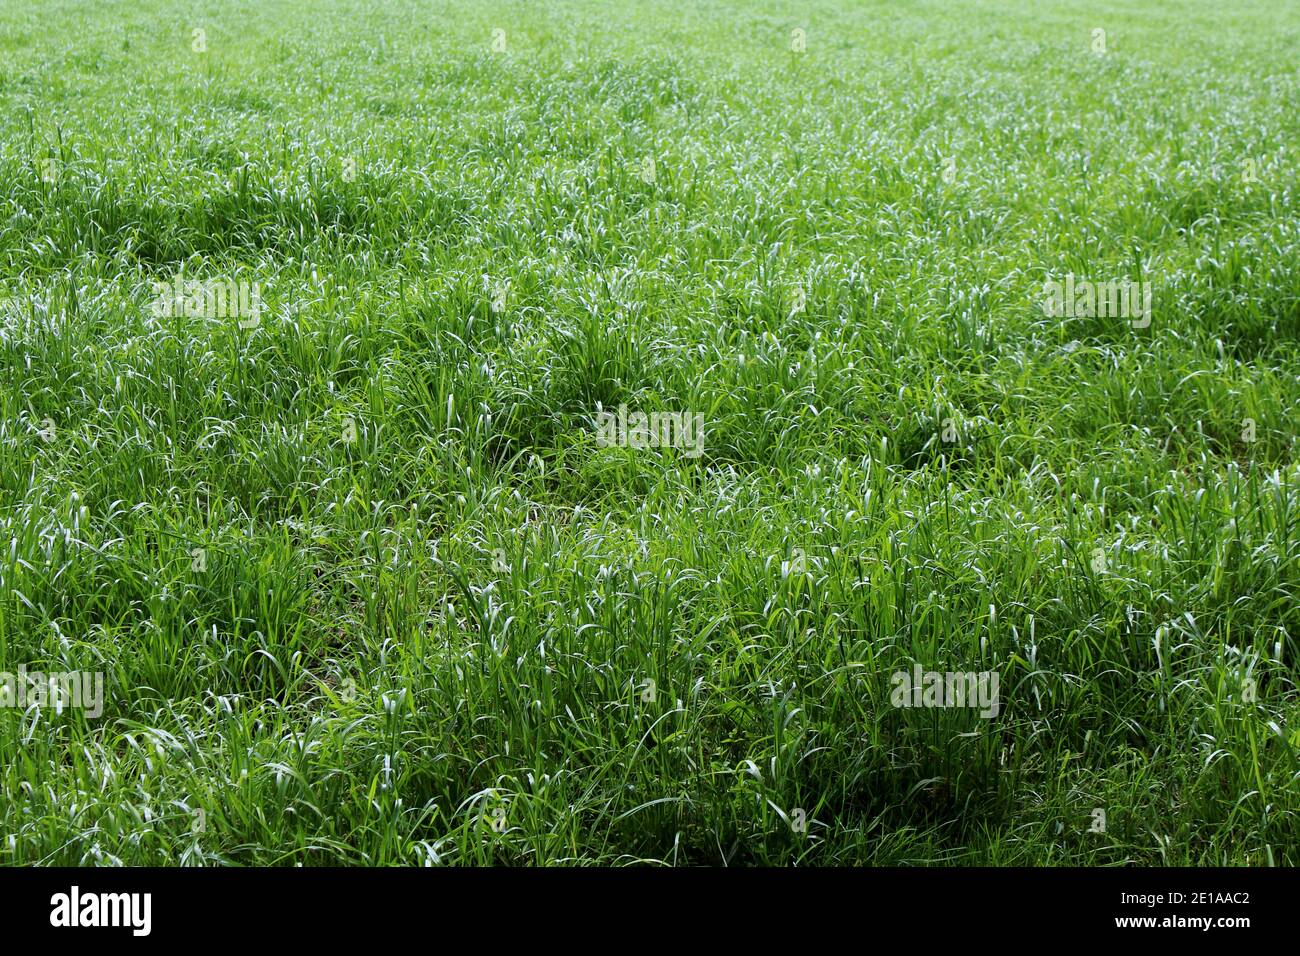 Eine grüne, ungemähte Wiese mit Gräsern im Frühling in einem Naturschutzgebiet in Deutschland. Stock Photo